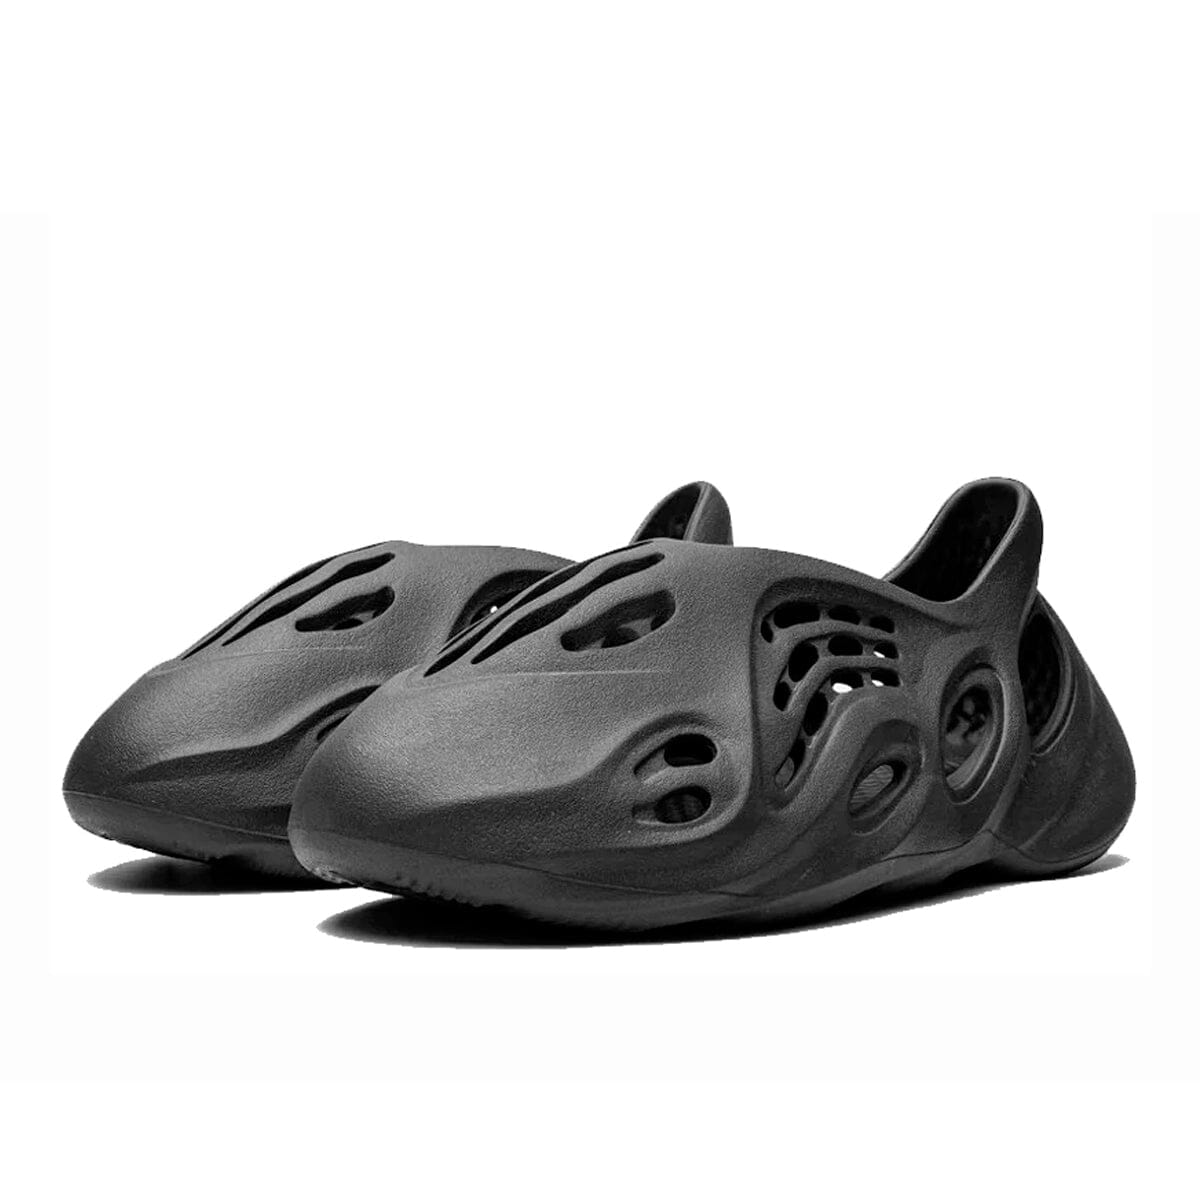 Adidas Yeezy Foam Runner Onyx Yeezy Foam Runner Blizz Sneakers 